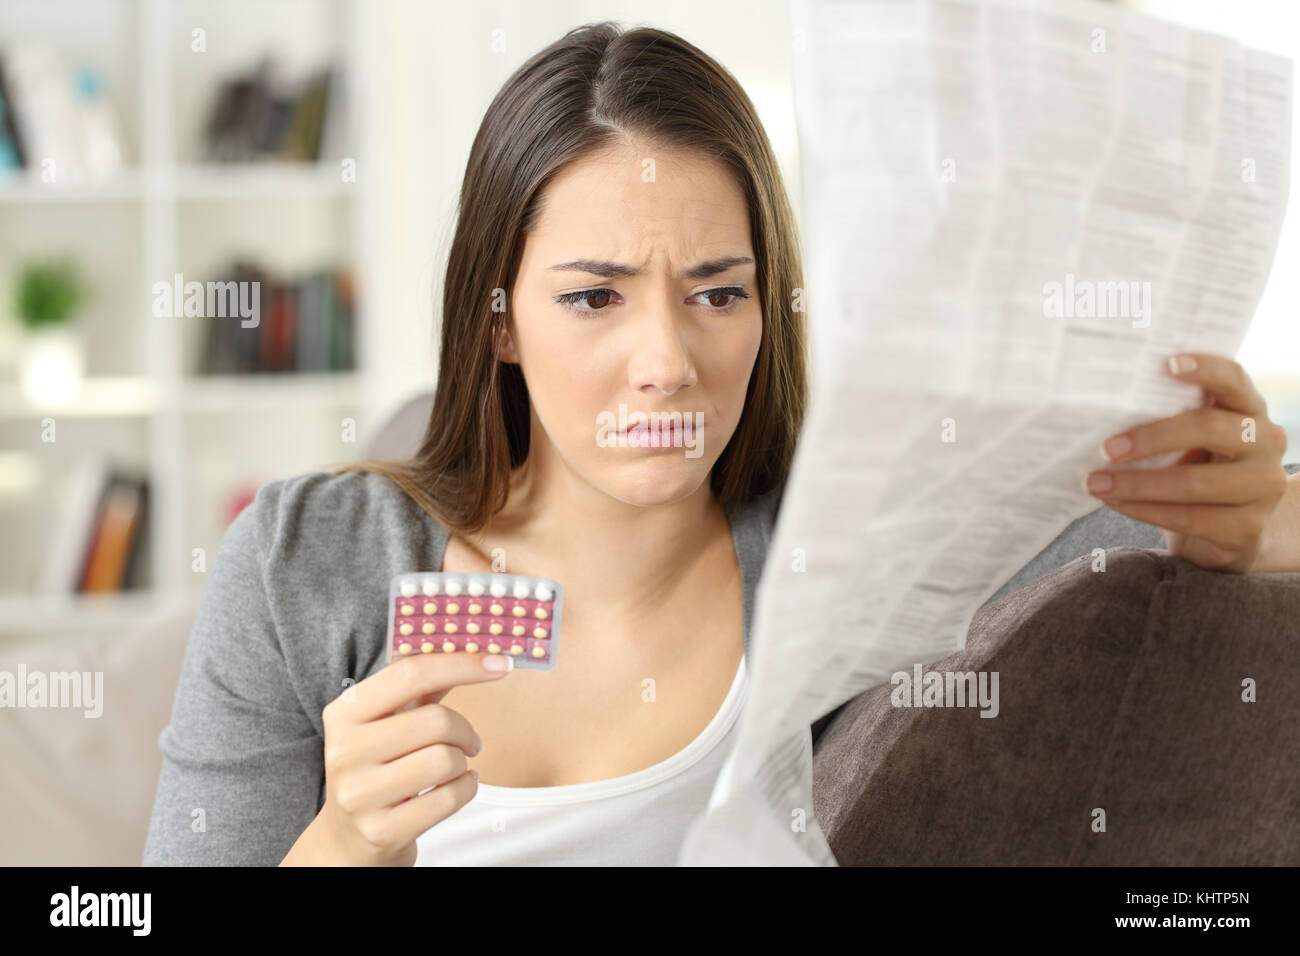 Pilules contraceptives worried woman reading leaflet assis sur un canapé à la maison Banque D'Images